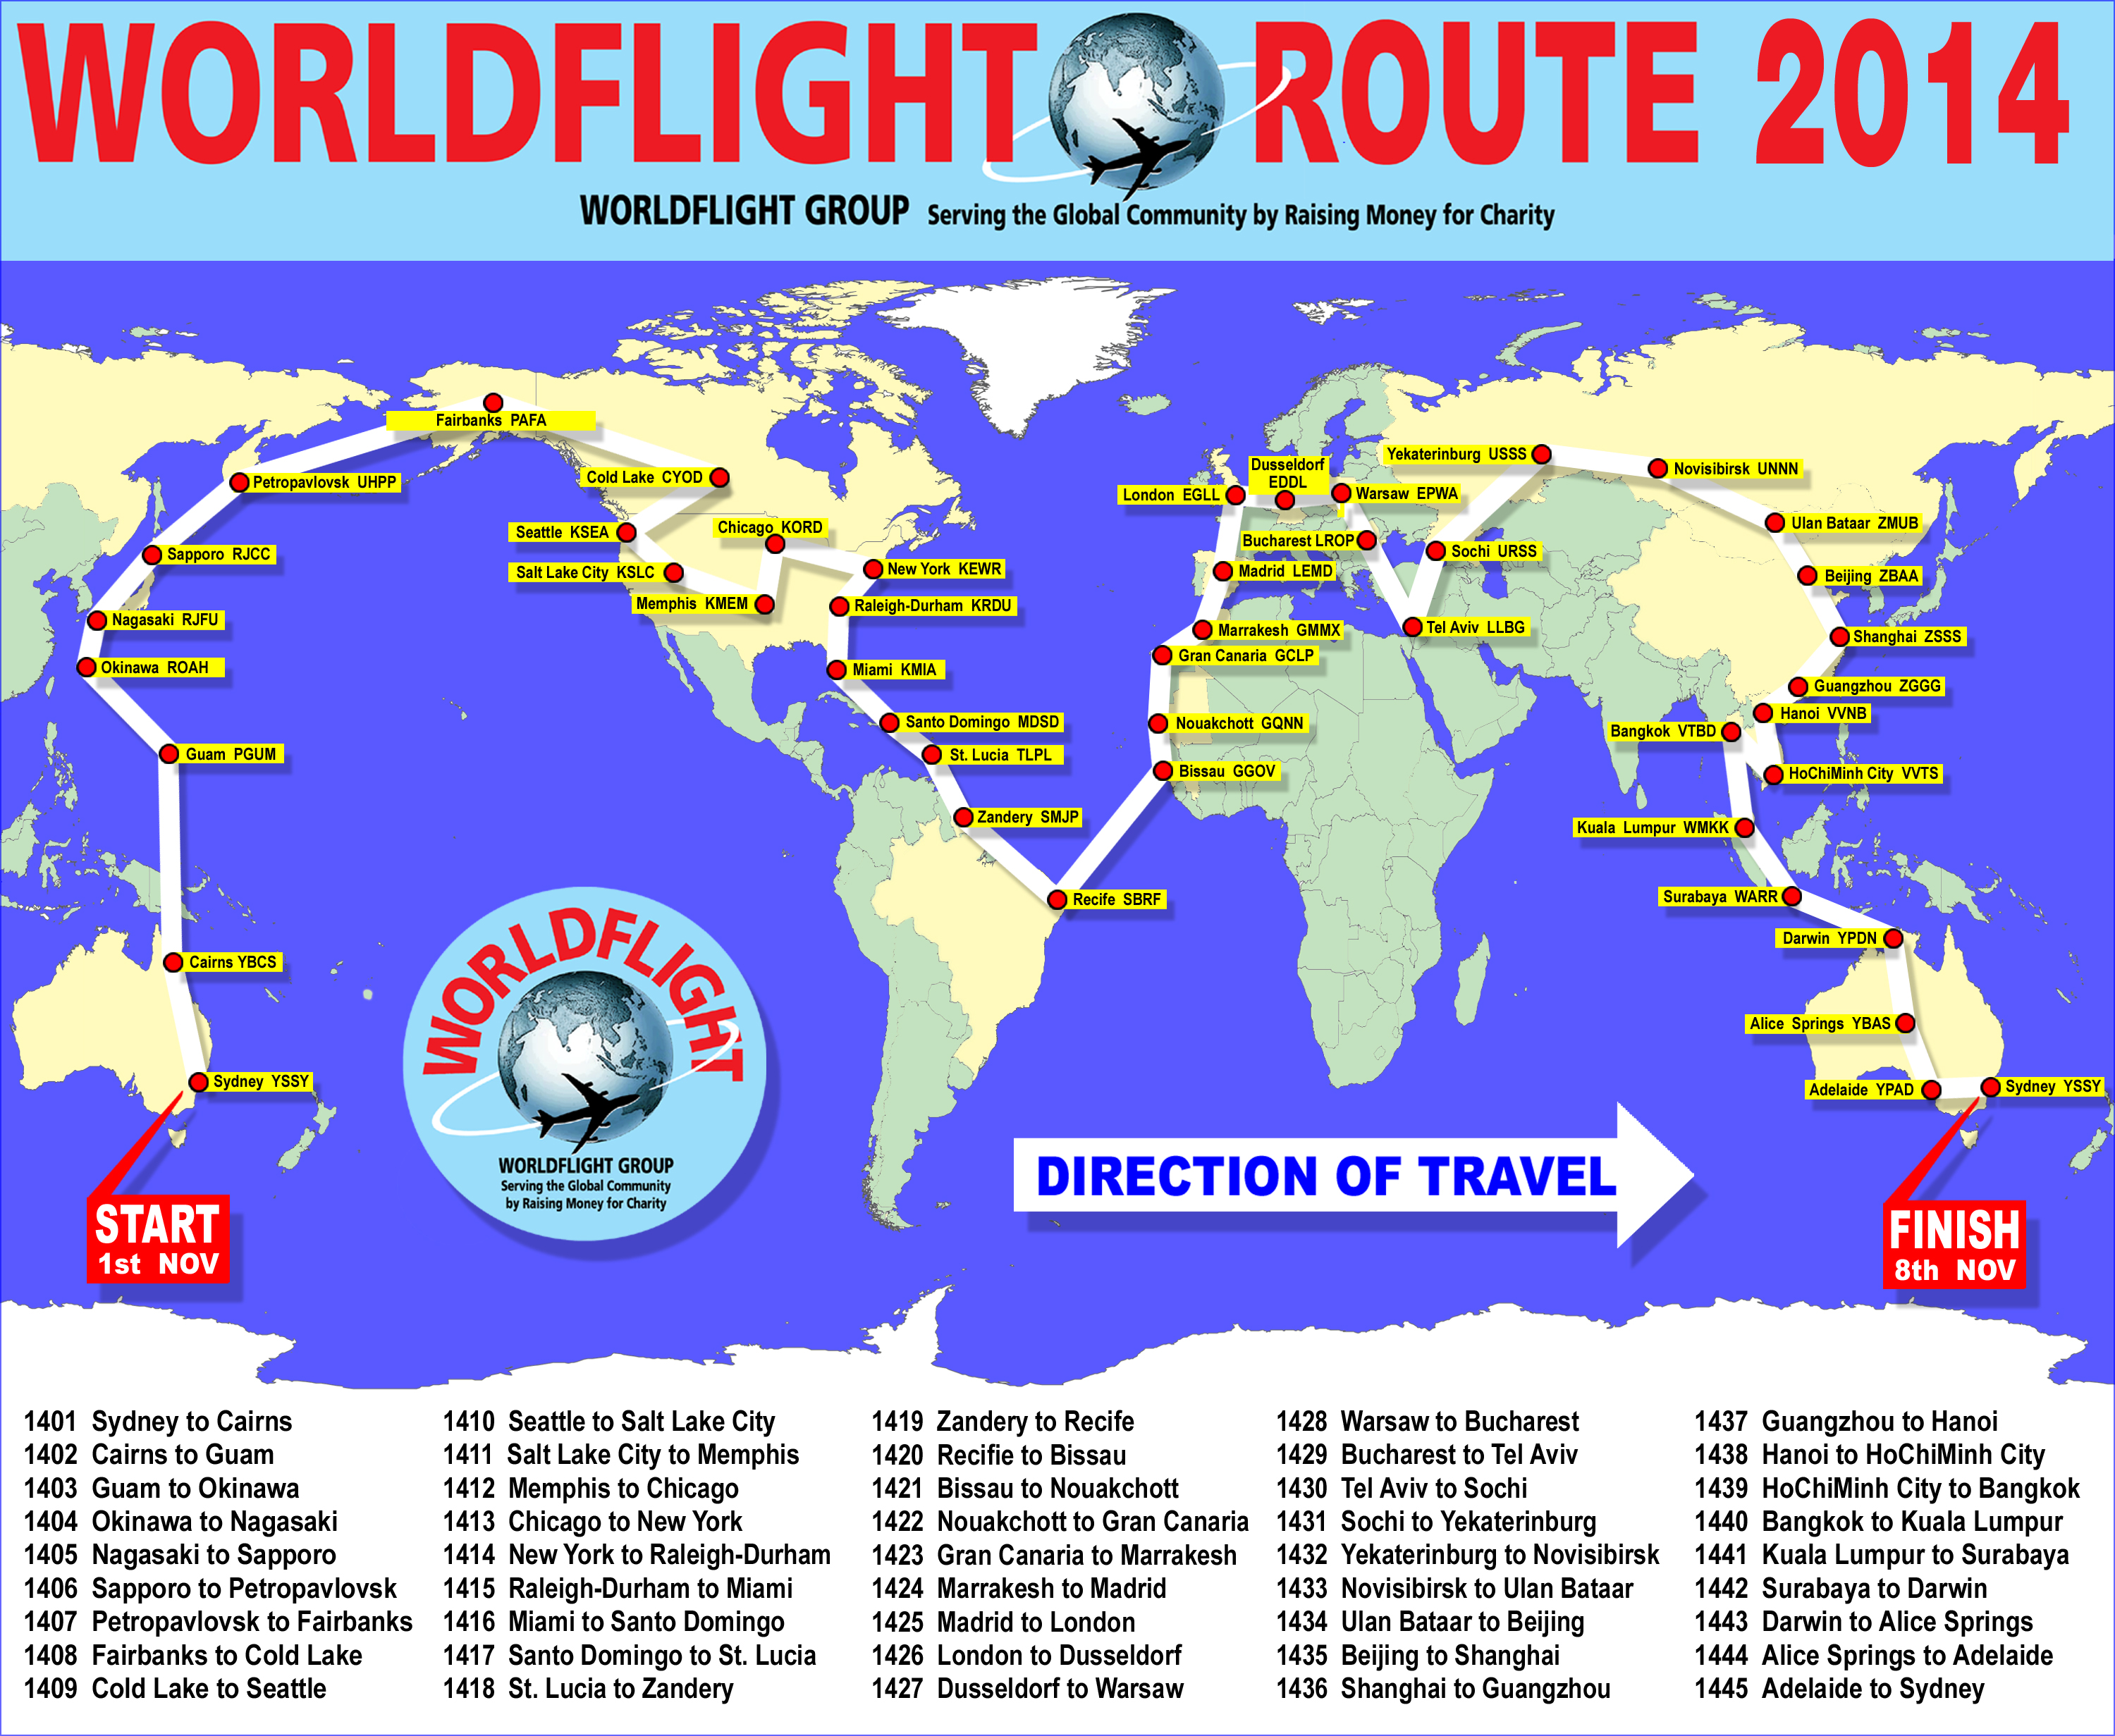 World Flight 2014 event image